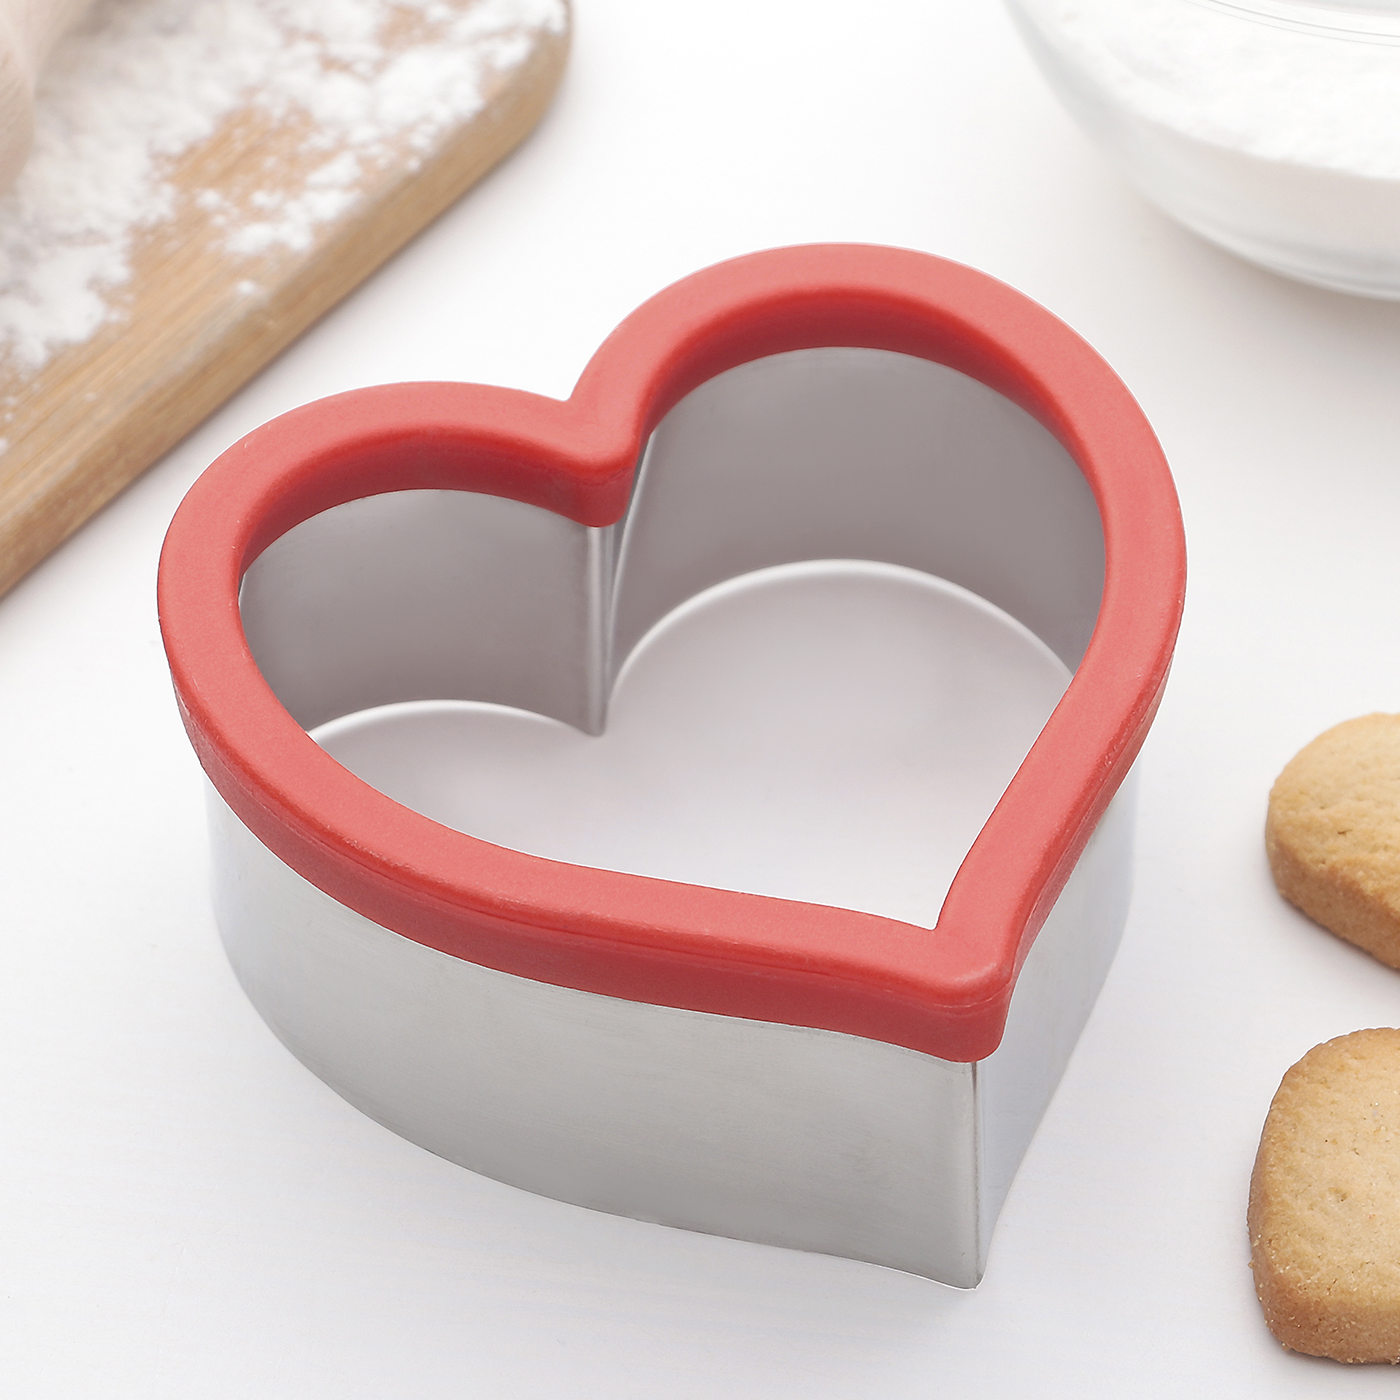 Форма для вырезания печенья «Сердце»,10.5×10.5×4.5 см